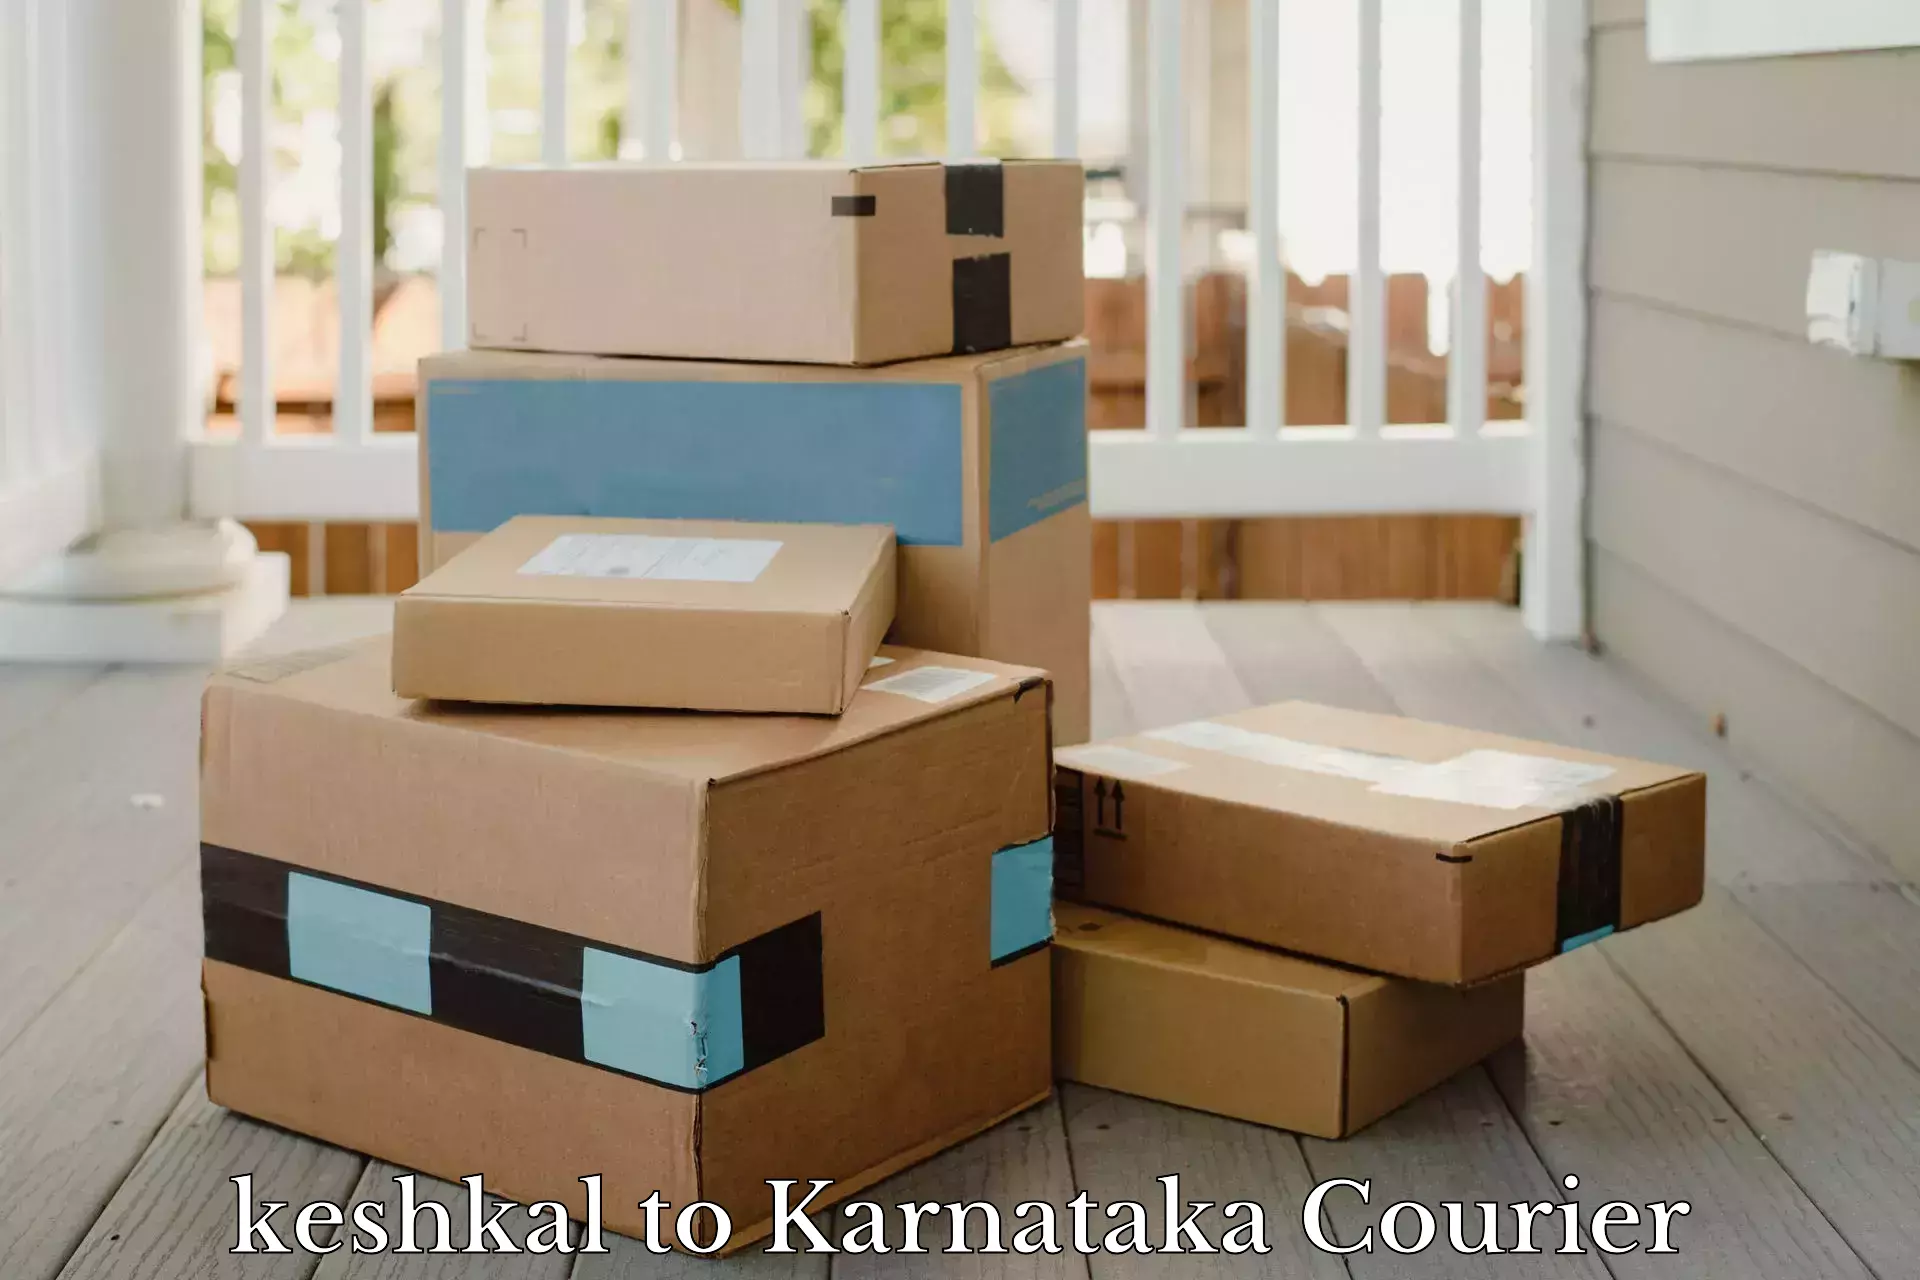 Holiday shipping services keshkal to Karnataka